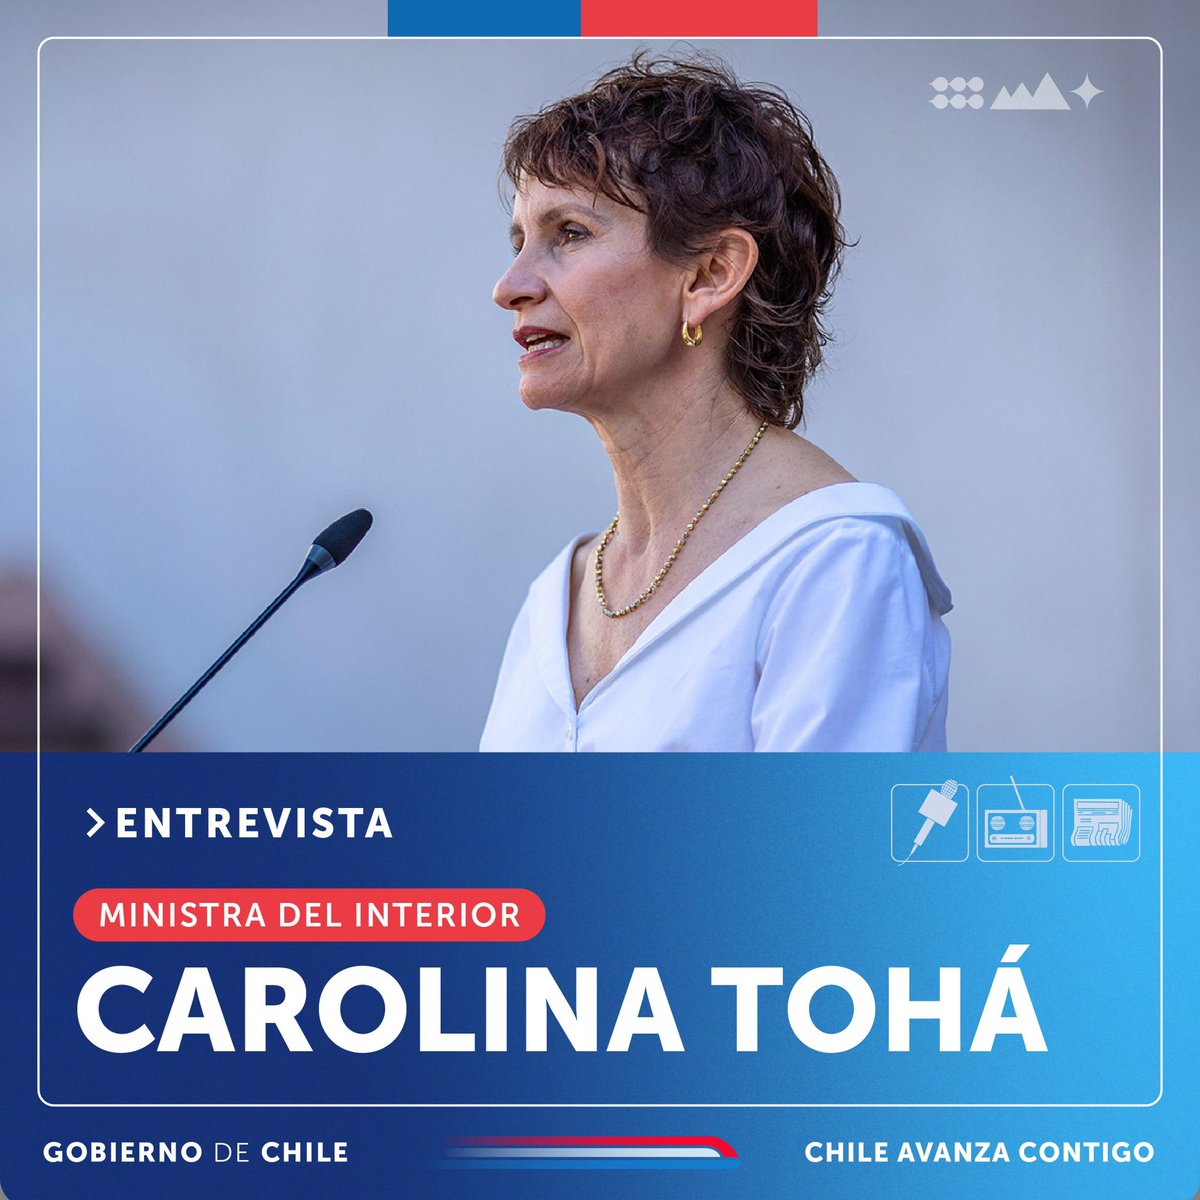 ENTREVISTA | La ministra del Interior y Seguridad Pública, @Carolina_Toha, conversará con el programa #PrimeraPauta de @Pauta_cl a las 7:30 hrs. 📻 Escucha acá: tinyurl.com/uae56fyy